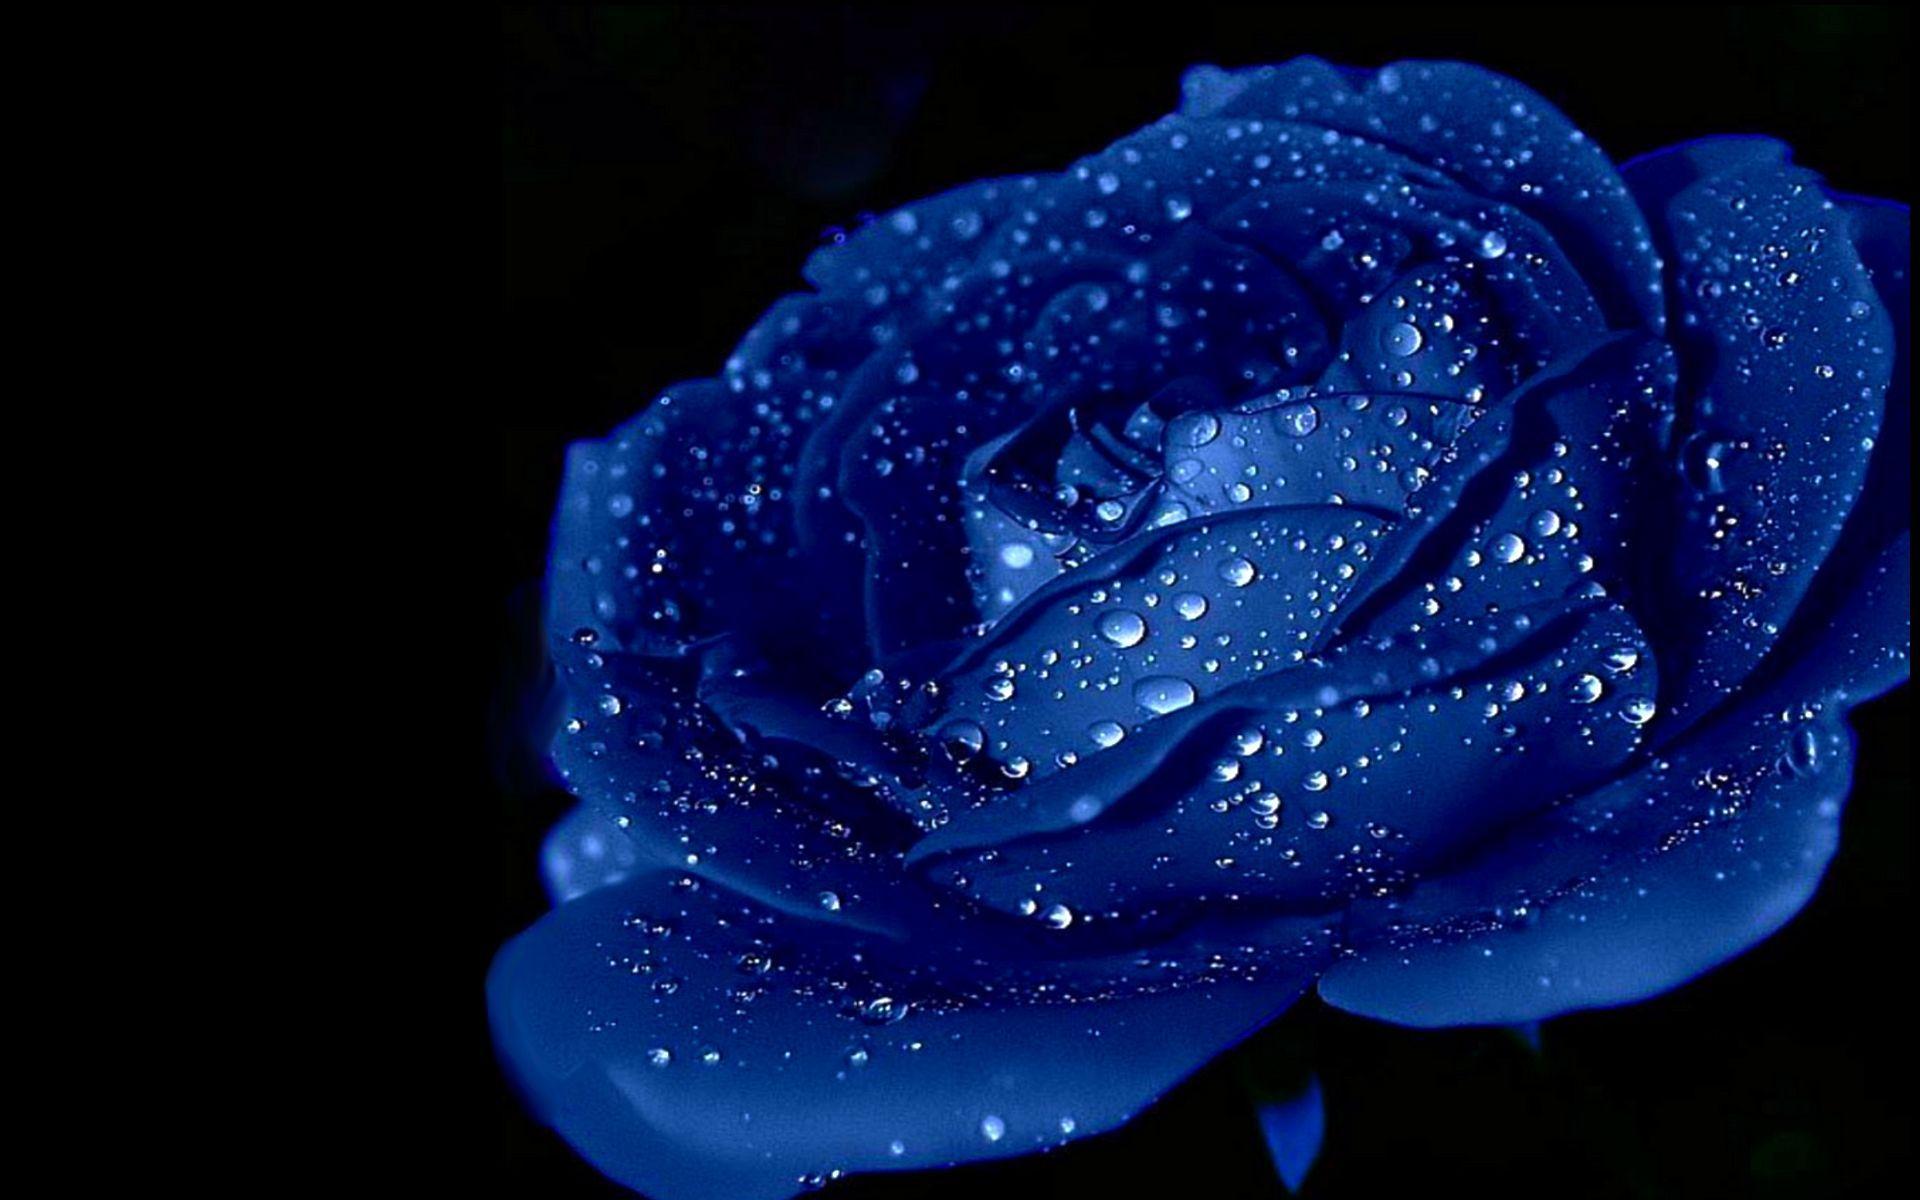 Black and Blue Rose Wallpapers - Top Hình Ảnh Đẹp